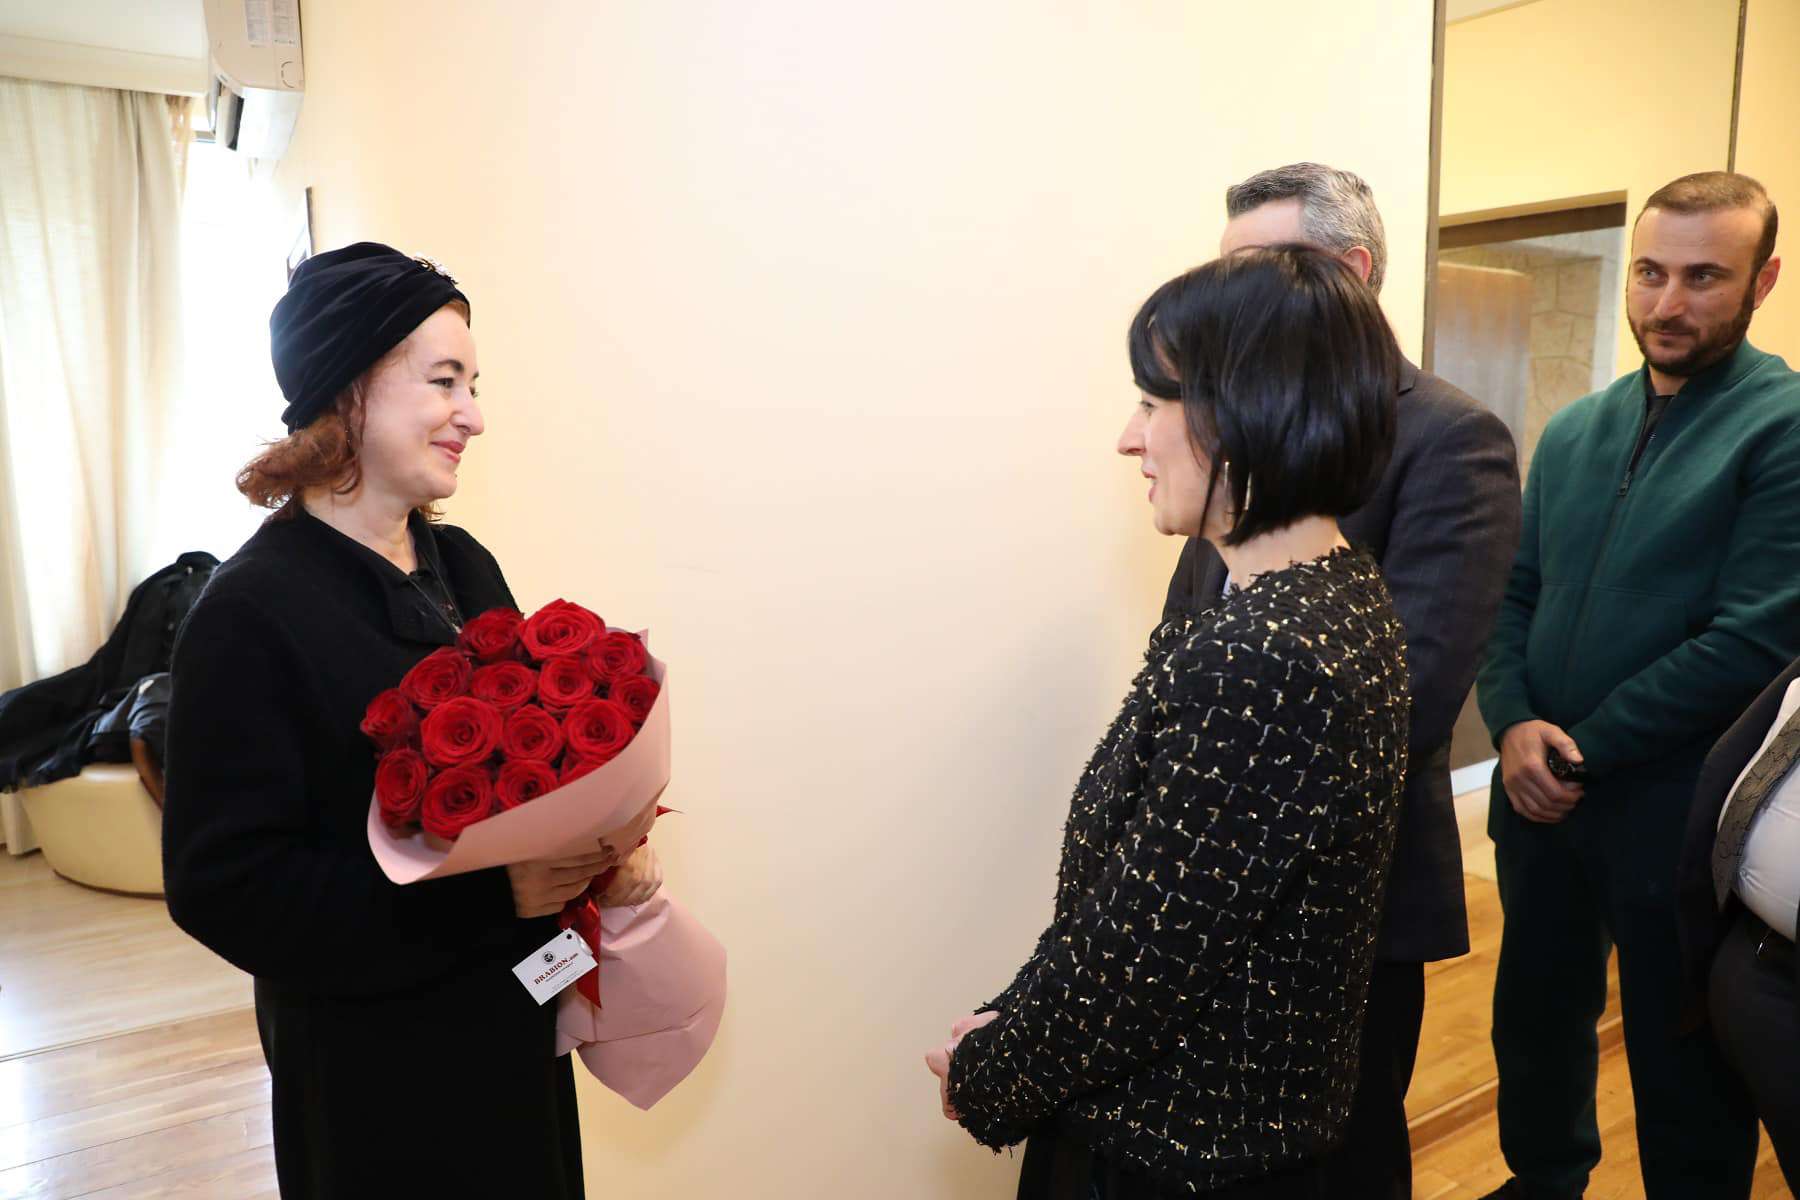 ԿԳՄՍ նախարարը հանդիպել է Հայաստանում հատնի «Սանսեթ բուլվար» մյուզիքլում մենակատարող վրացի երգչուհի Թամարա Գվերդծիթելիին